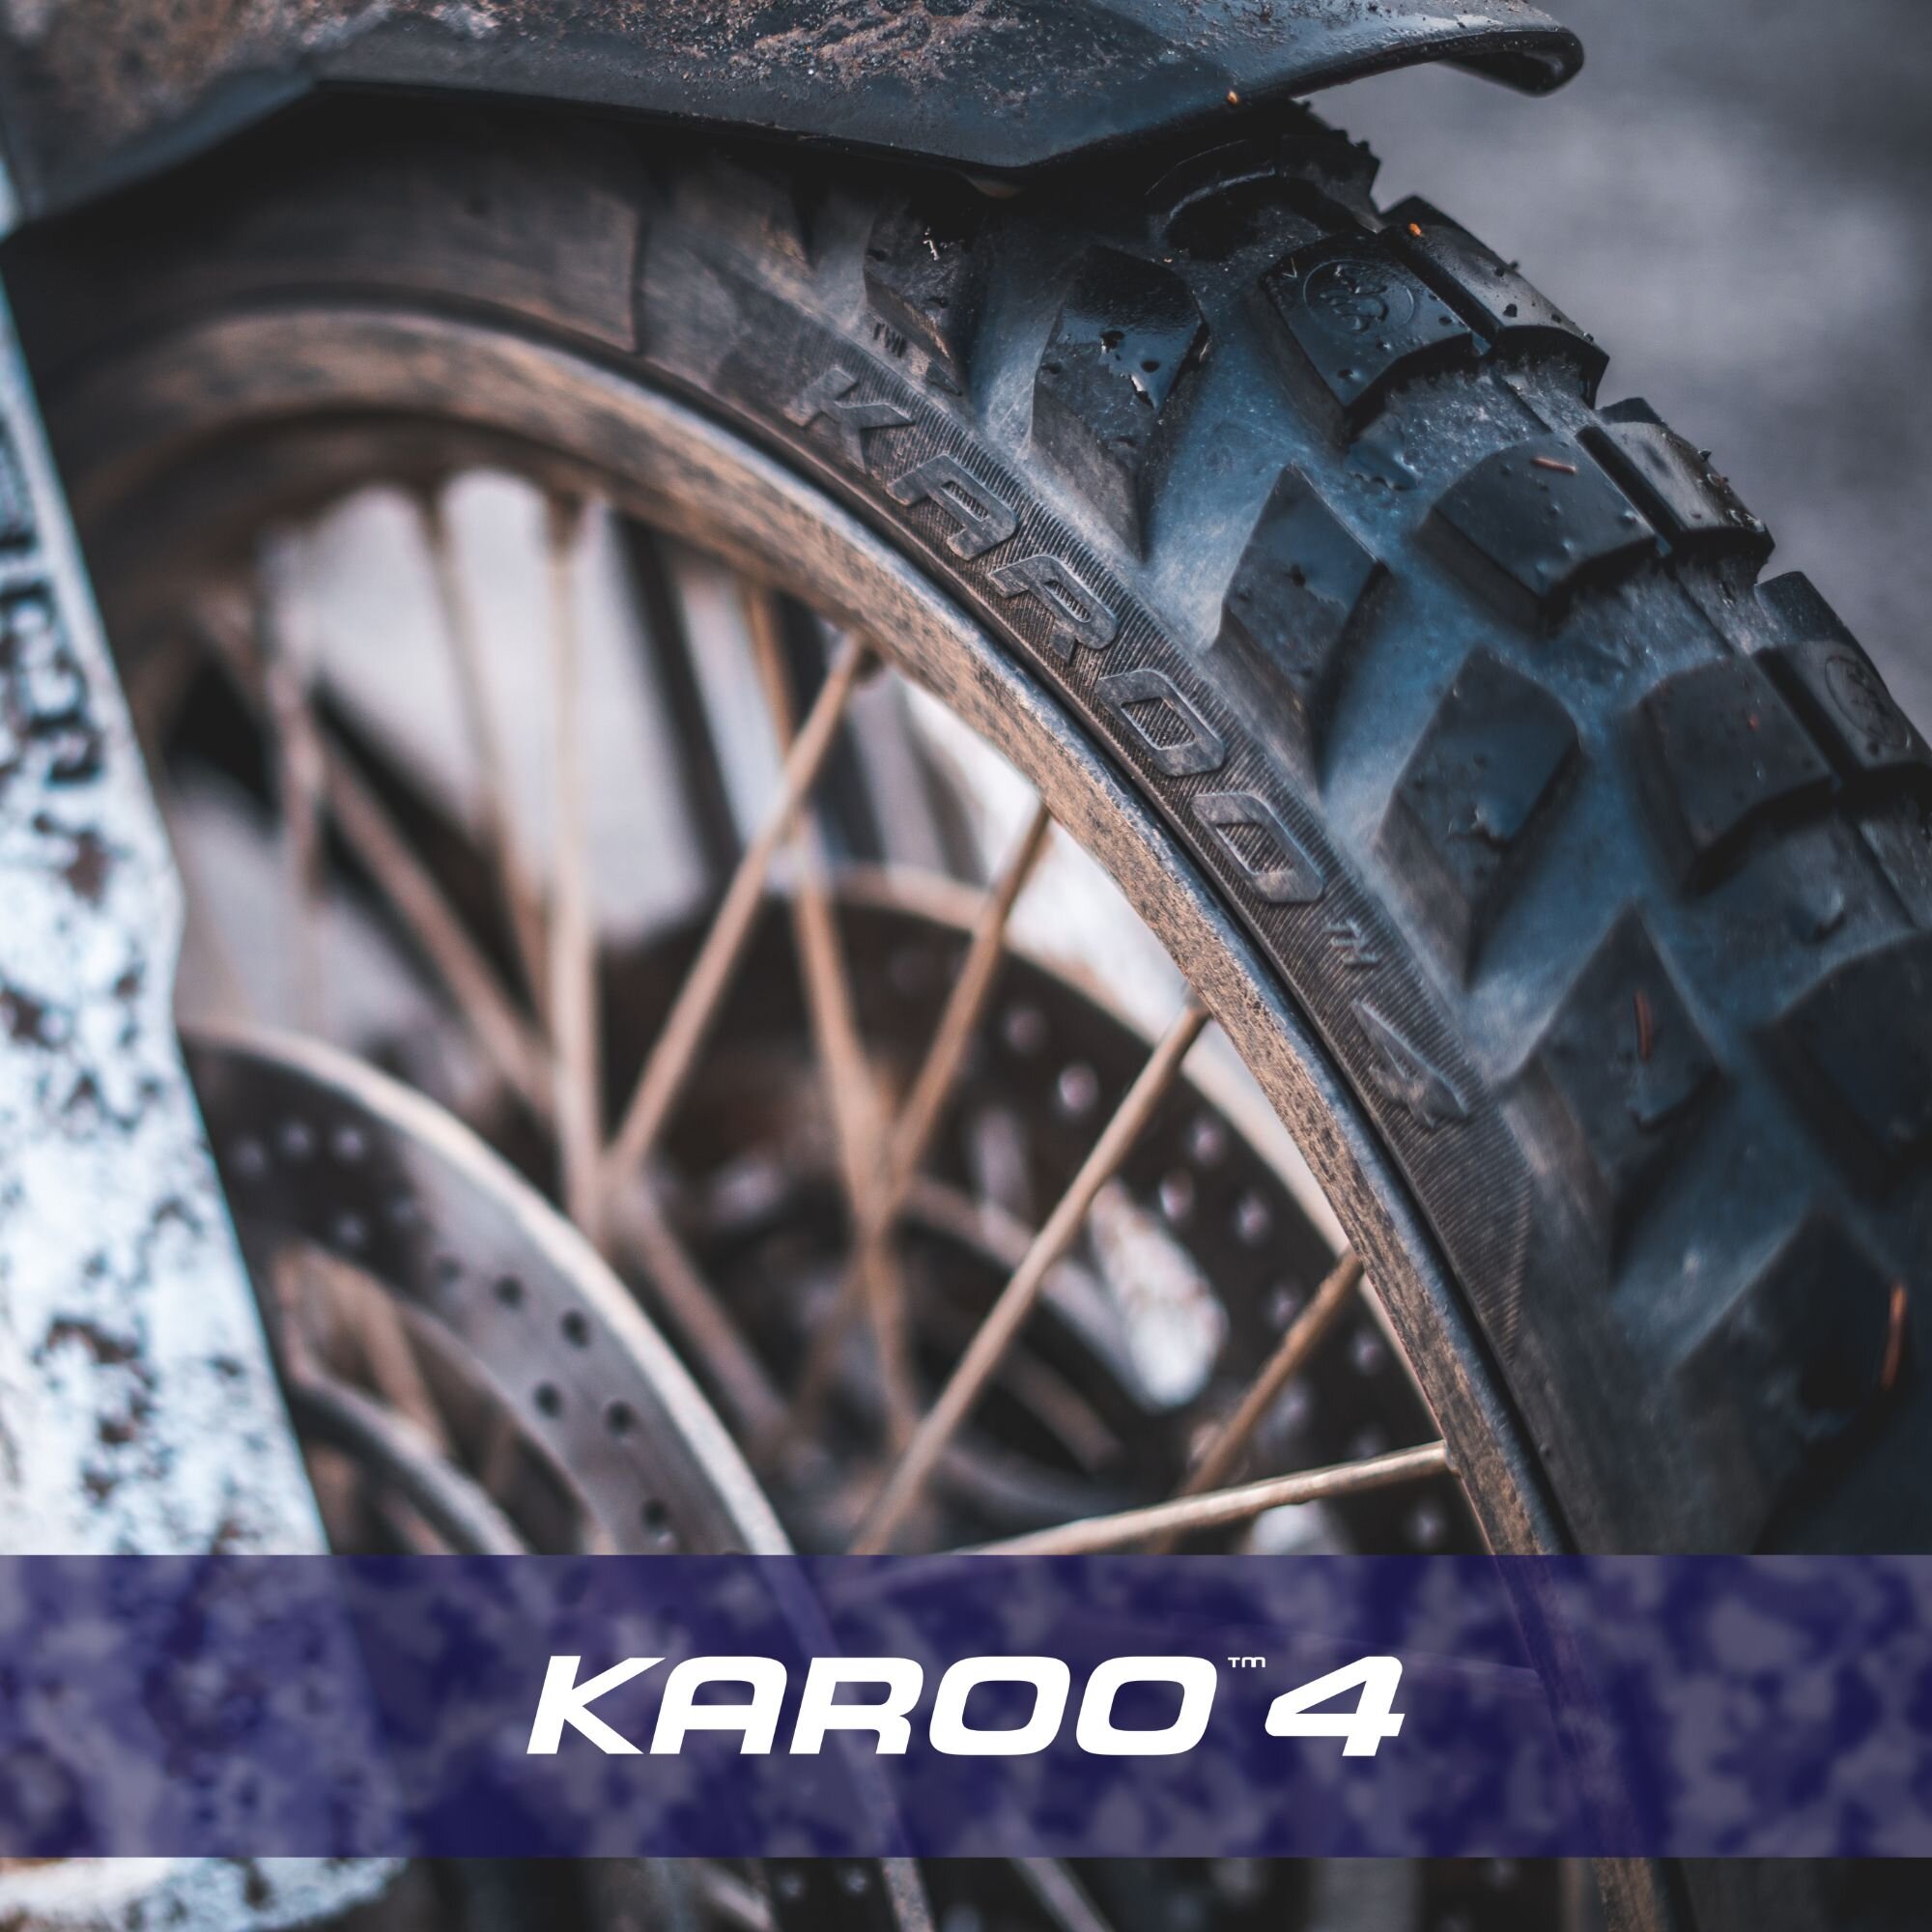 KAROO™ 4 テクノロジー解説①オフロード性能を最大限進化させながら、オンロードでの実力もアップ